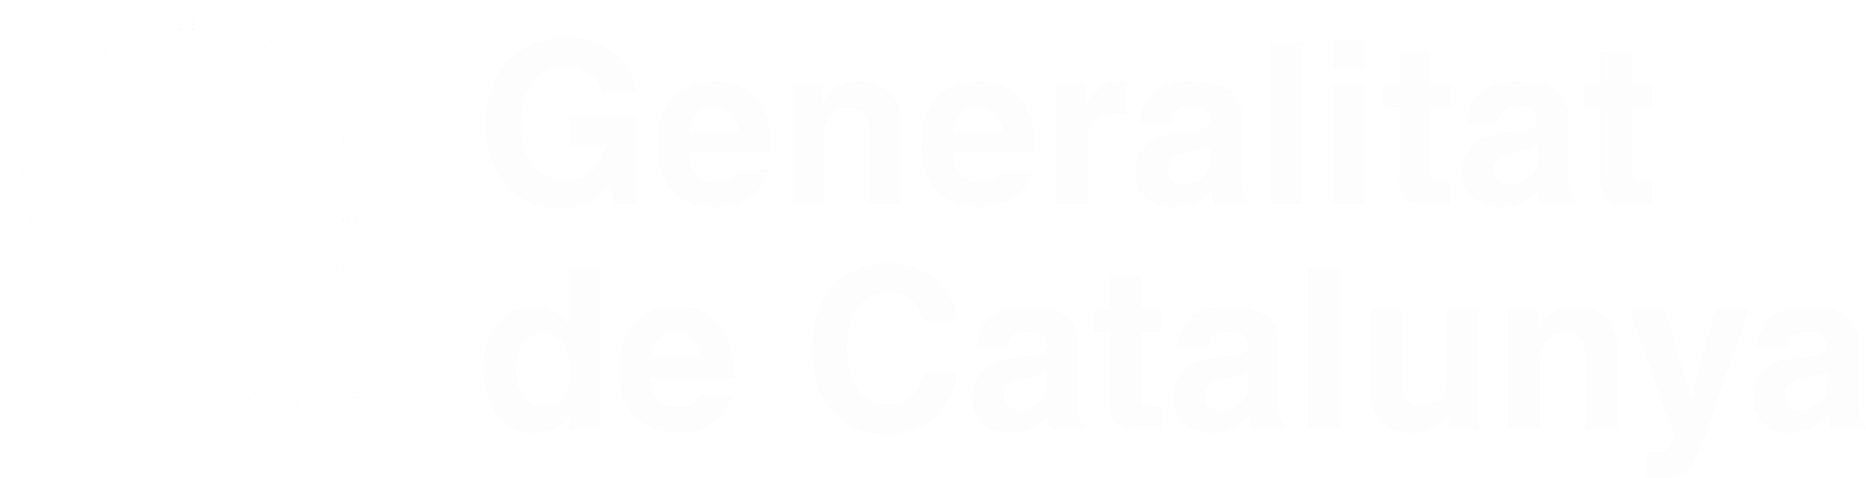 Generalitat logo